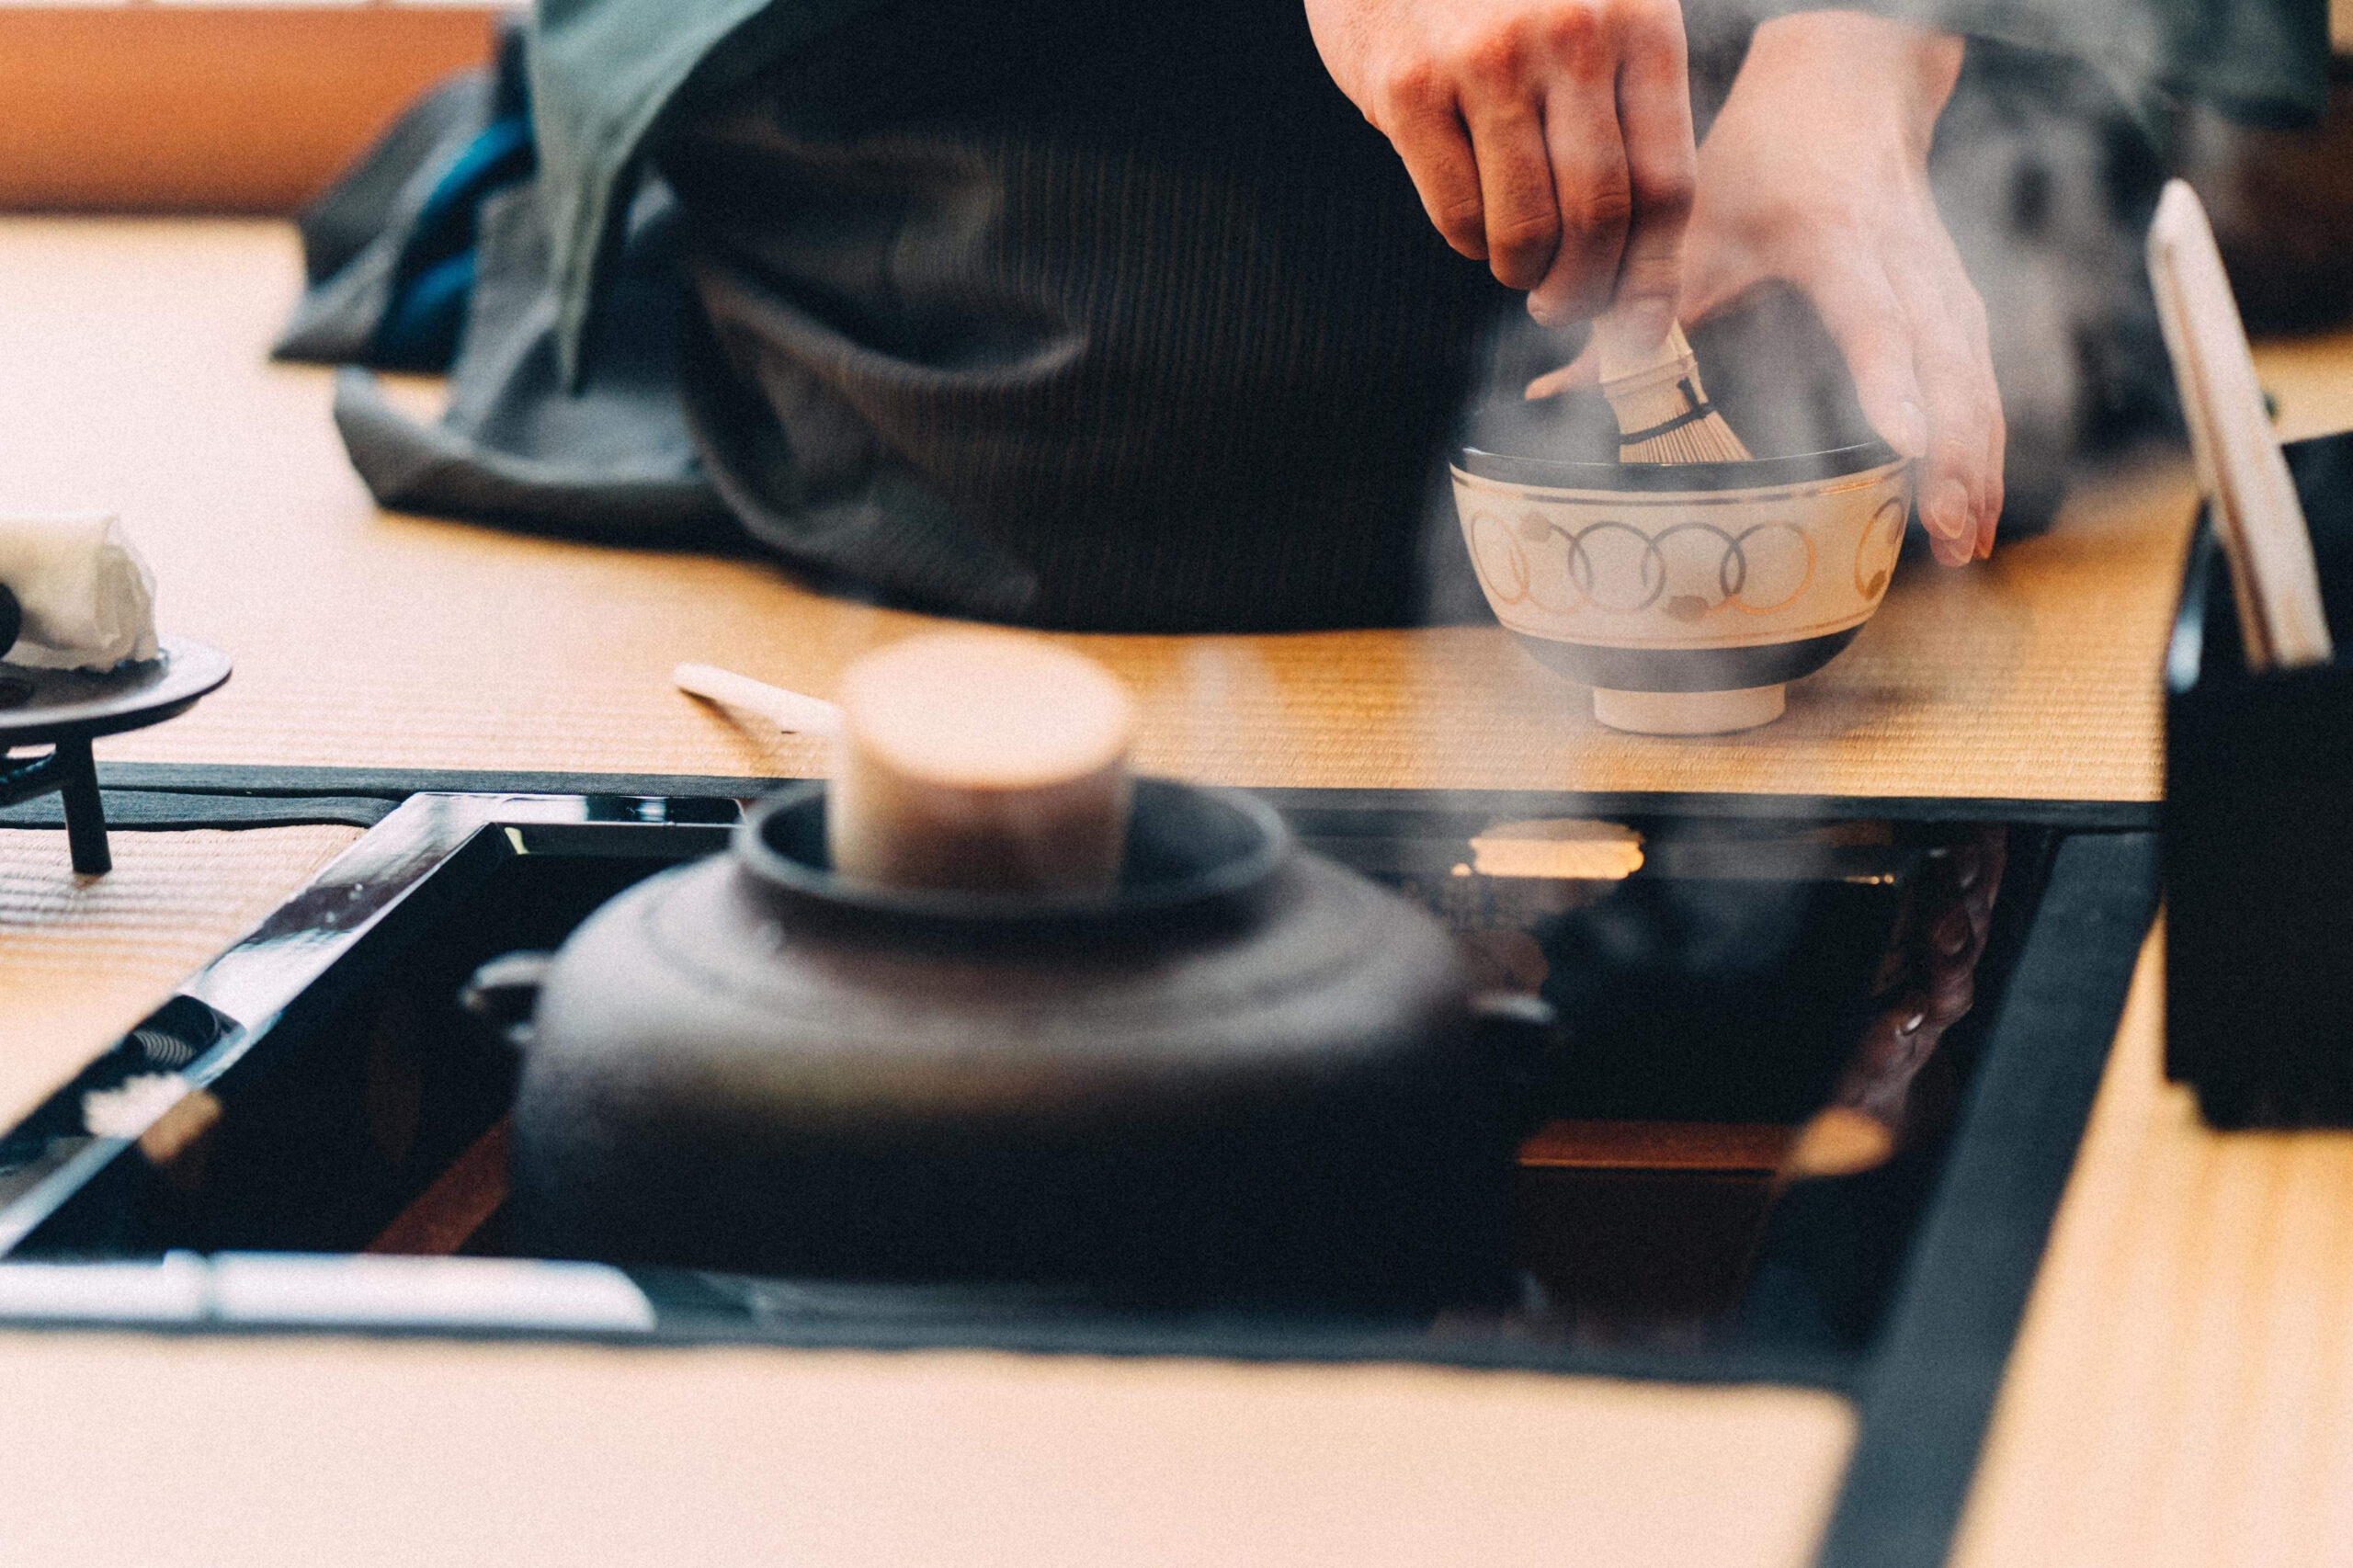 1997年生まれ。裏千家での茶歴は15年を超え、現在は株式会社TeaRoom代表取締役を務める。2020年9月には裏千家より茶名を拝命。門川京都市長より日本代表/Mr.TEAに任命されるなど、「茶の湯文化× 日本茶産業」の切り口で活動中。米UC DavisGlobal Tea Initiative最年少登壇の実績も持つ。